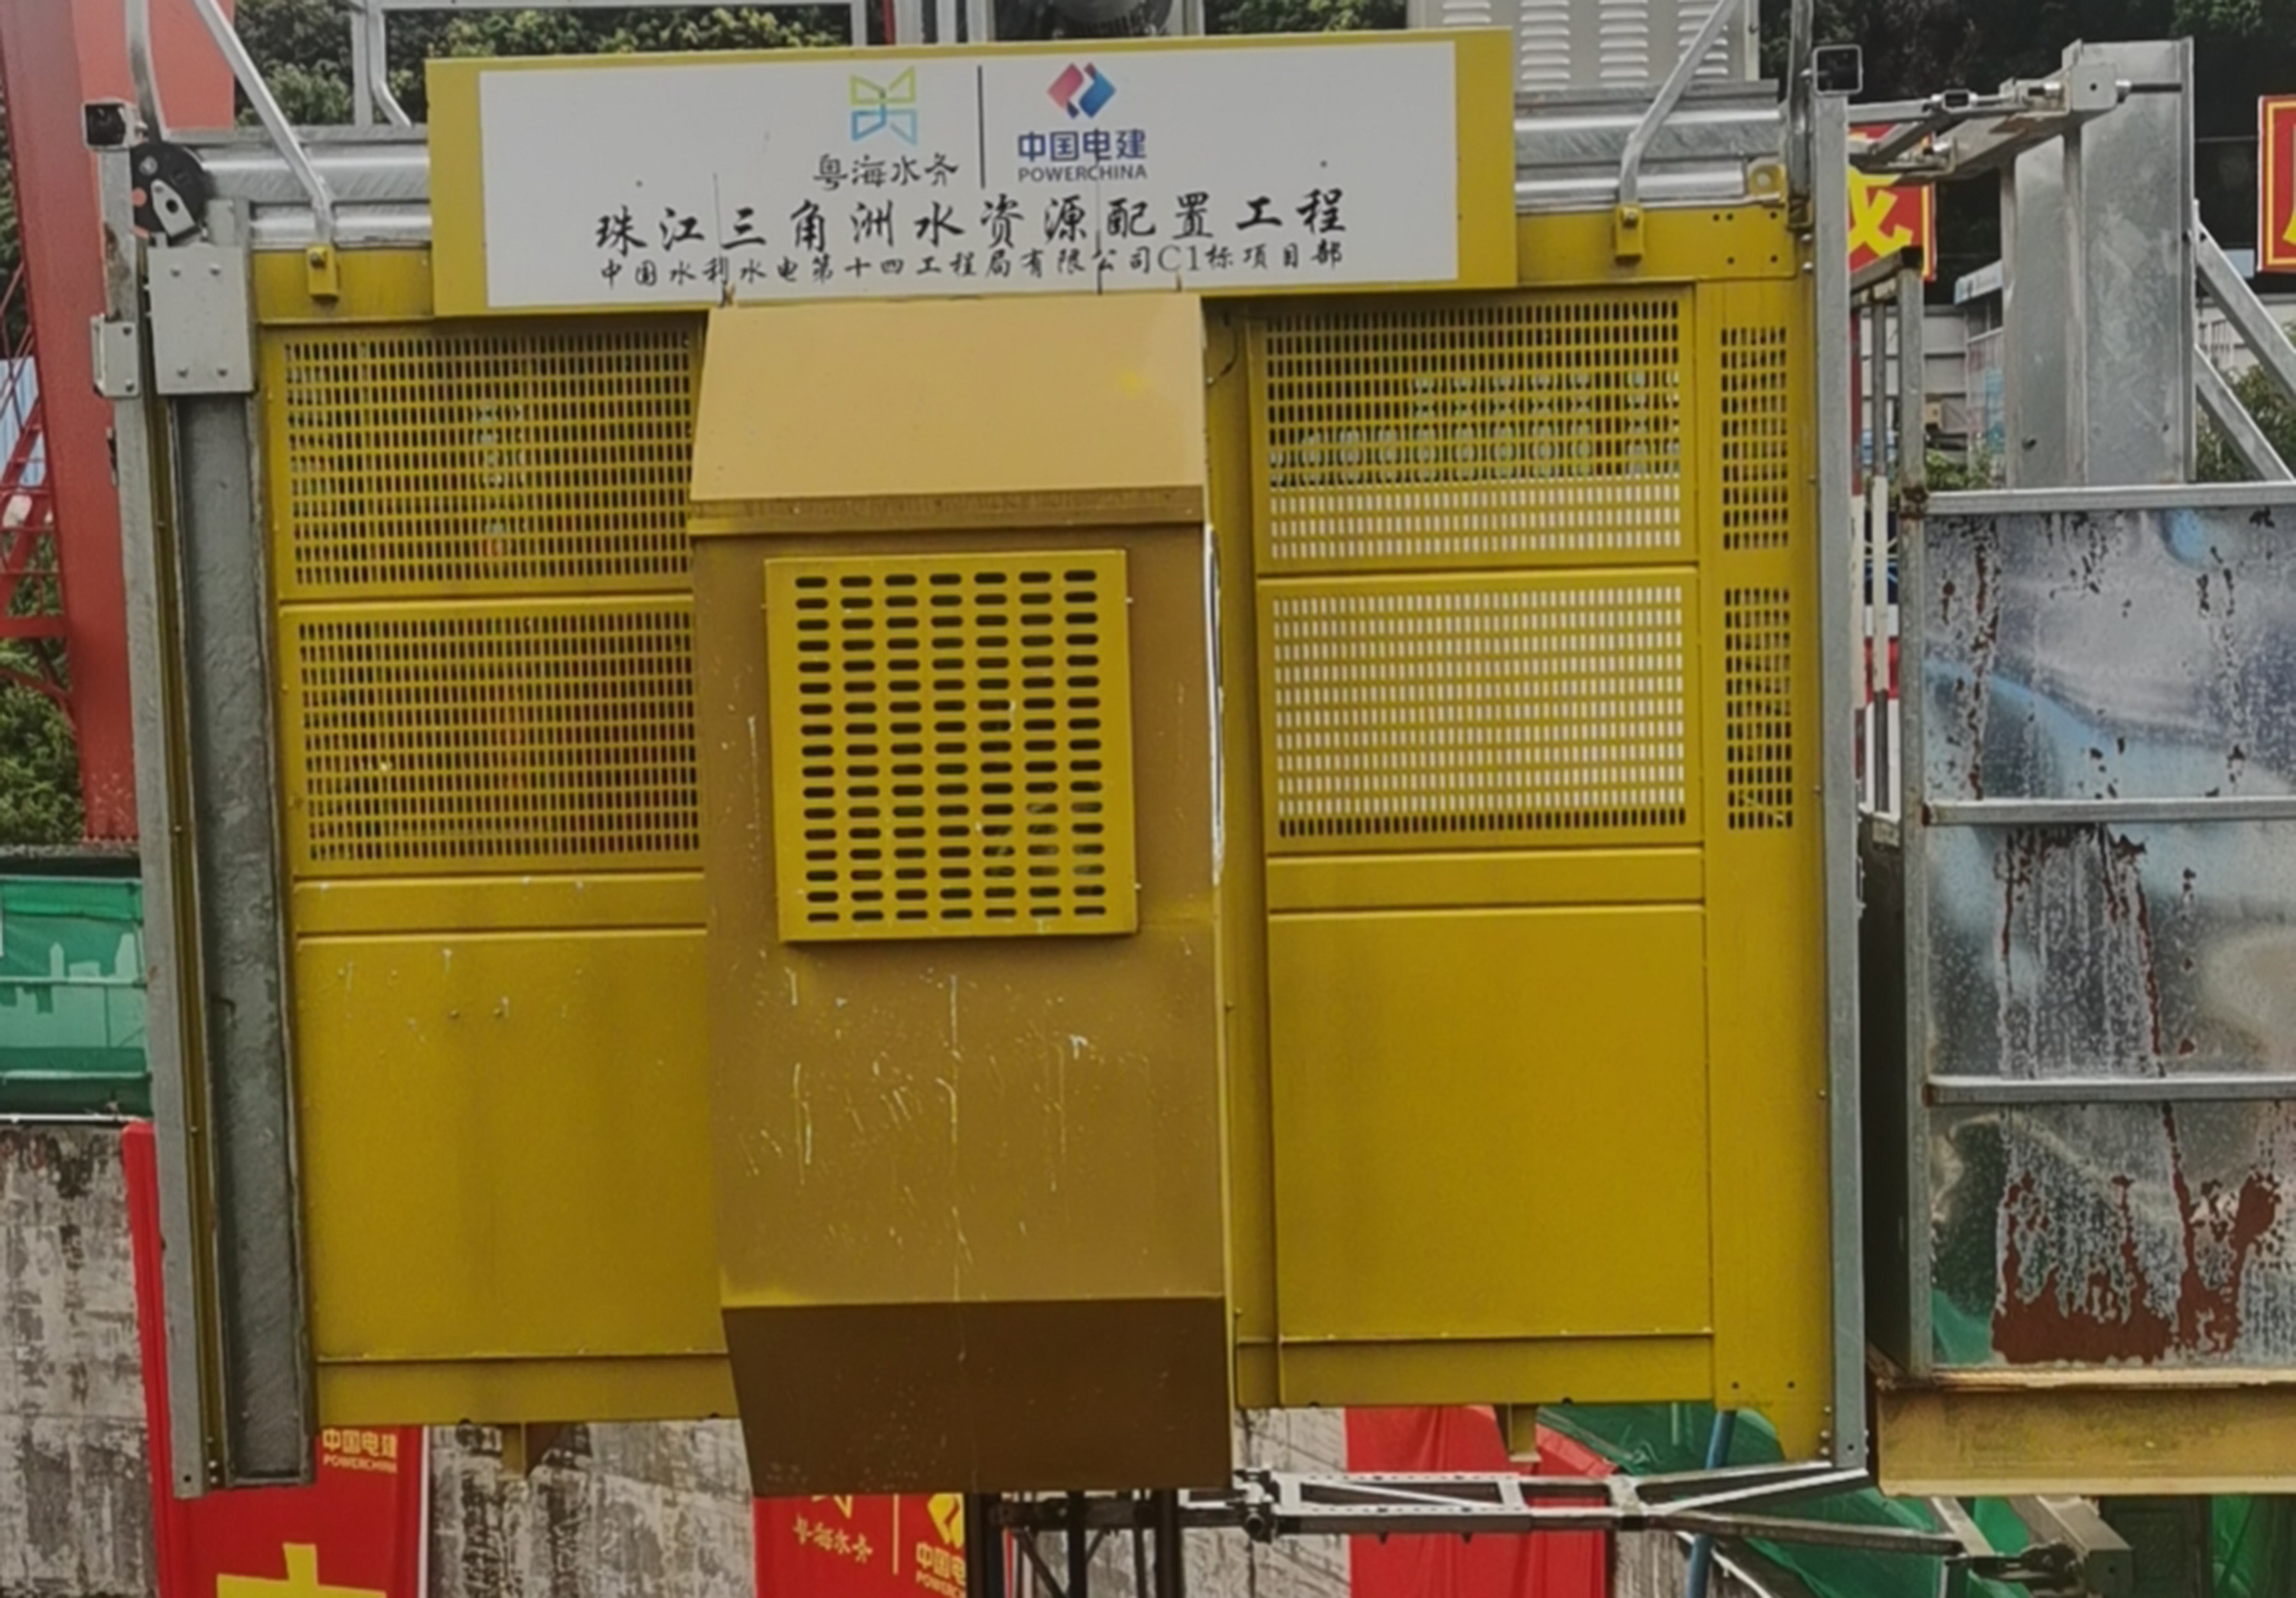 我司生产的施工升降机应用在珠江三角洲水资源配置工程项目